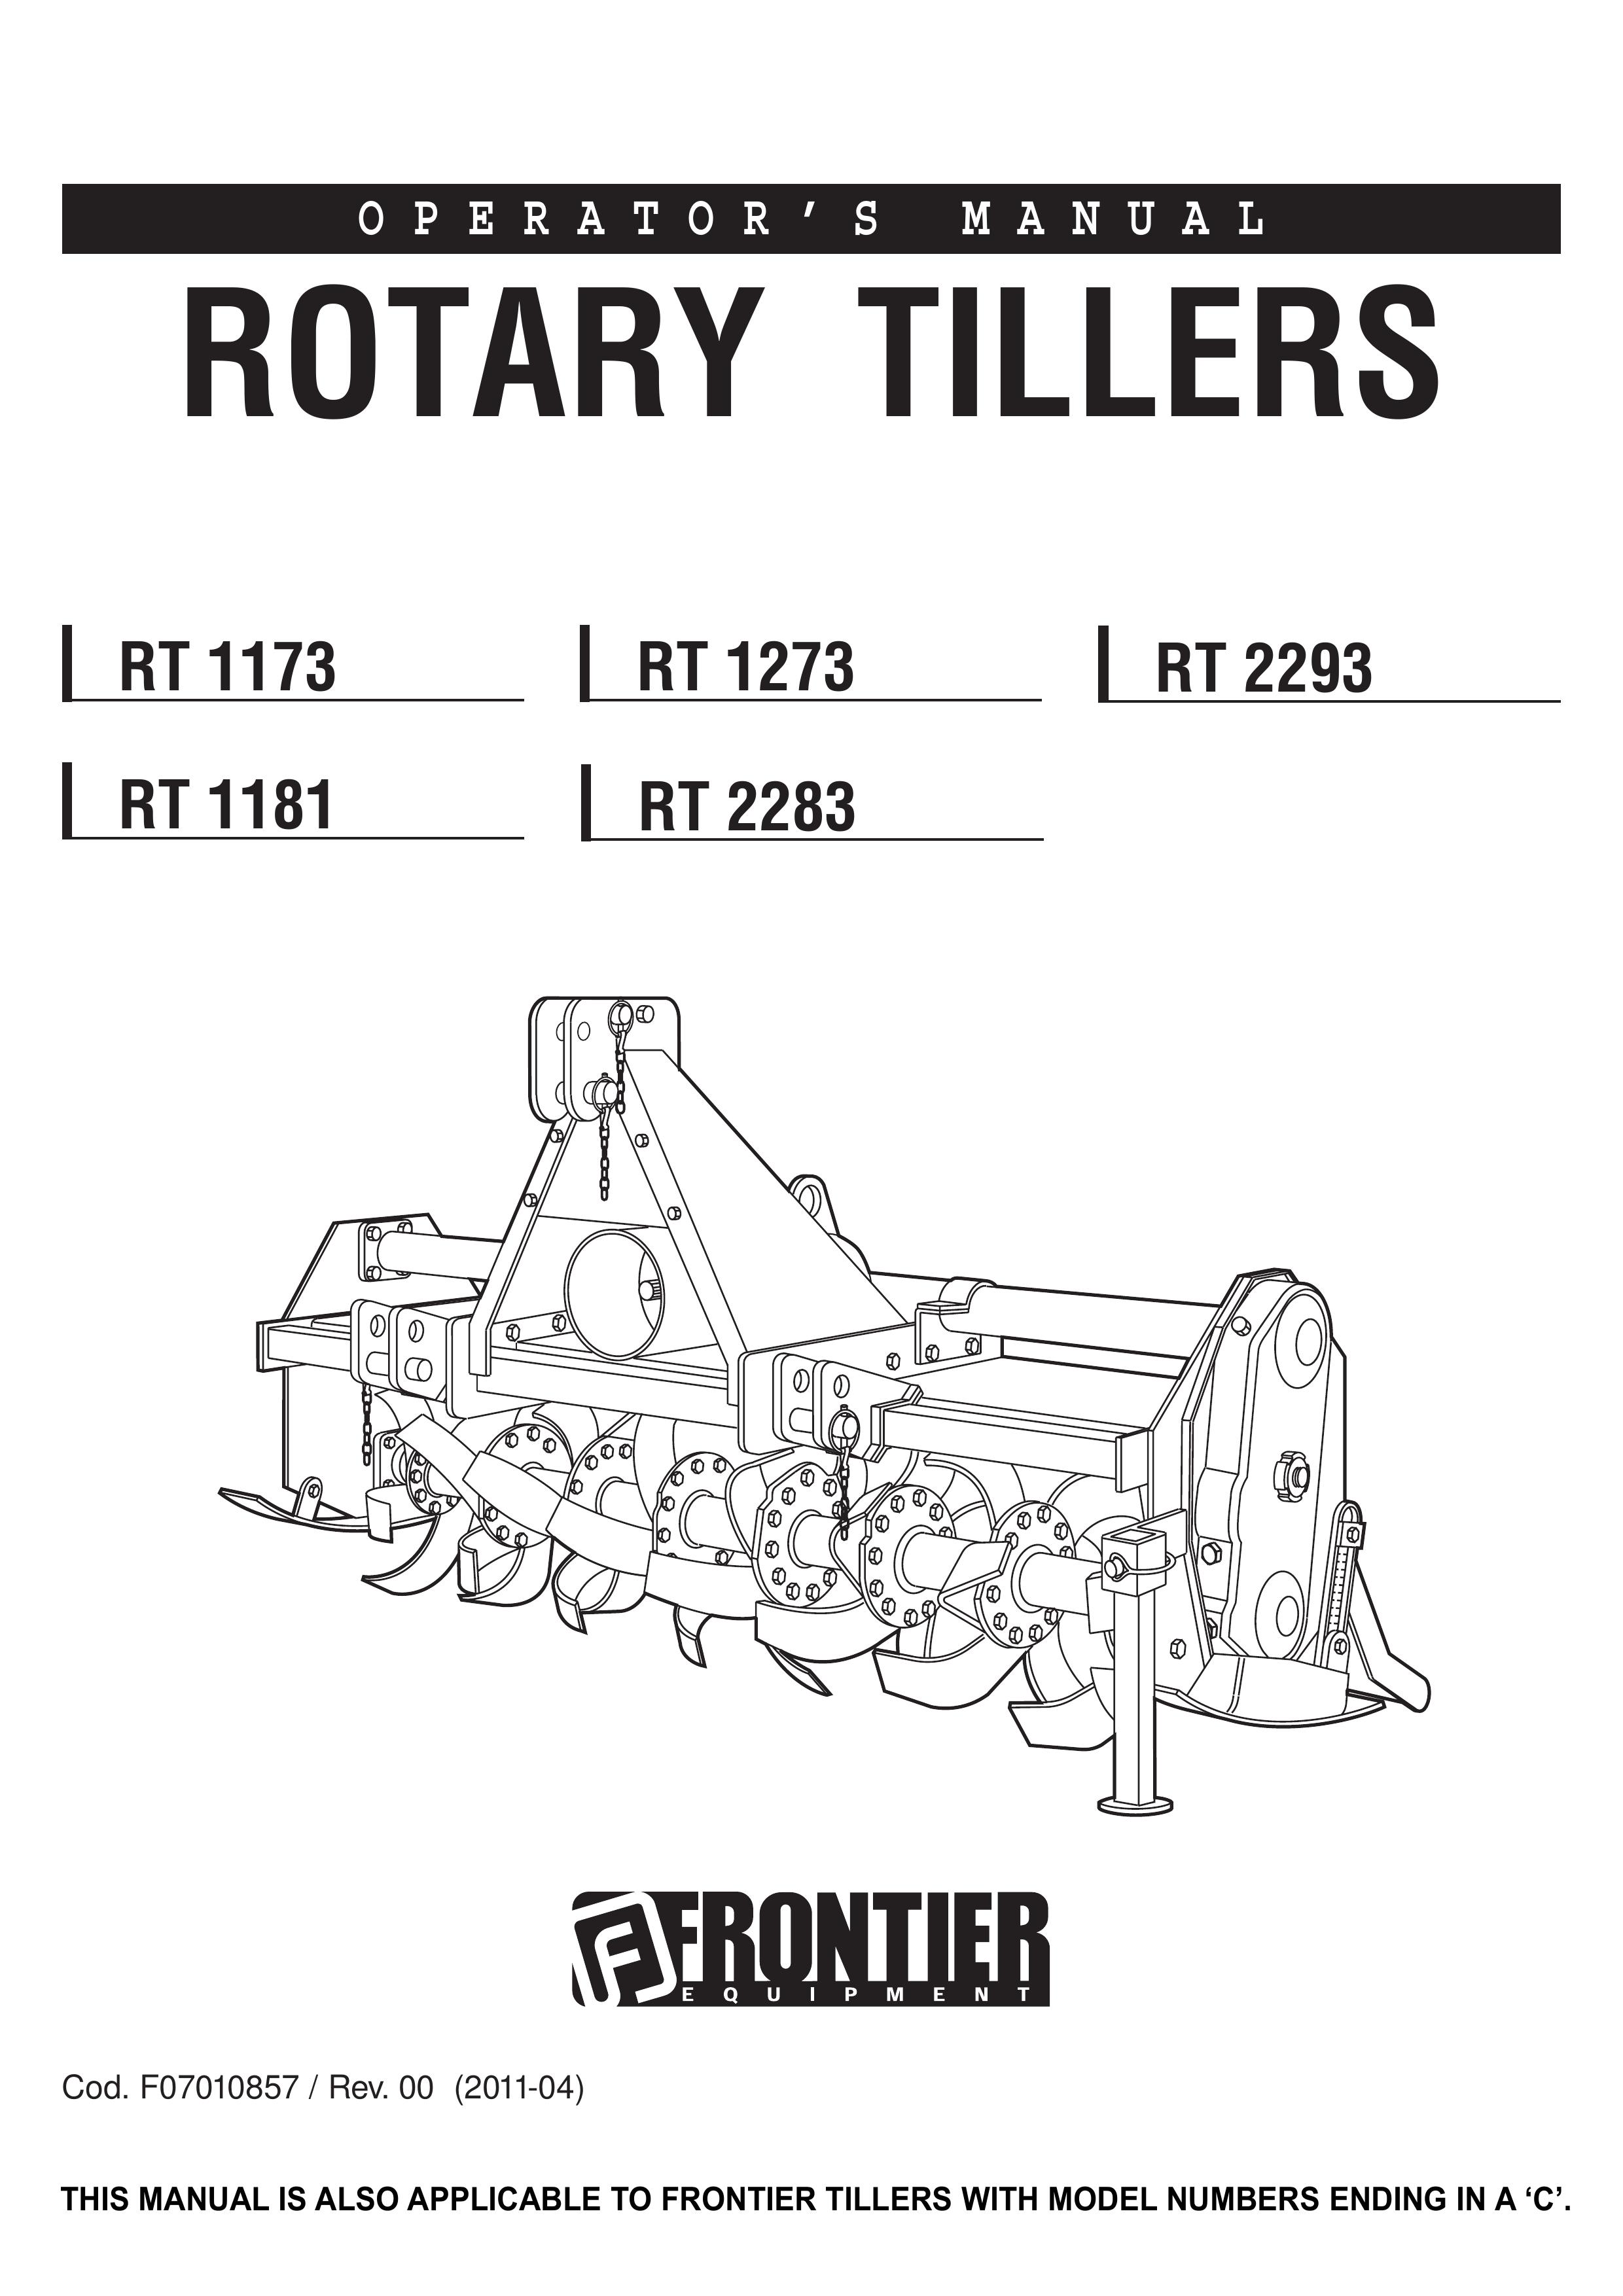 John Deere RT 2283 Tiller User Manual